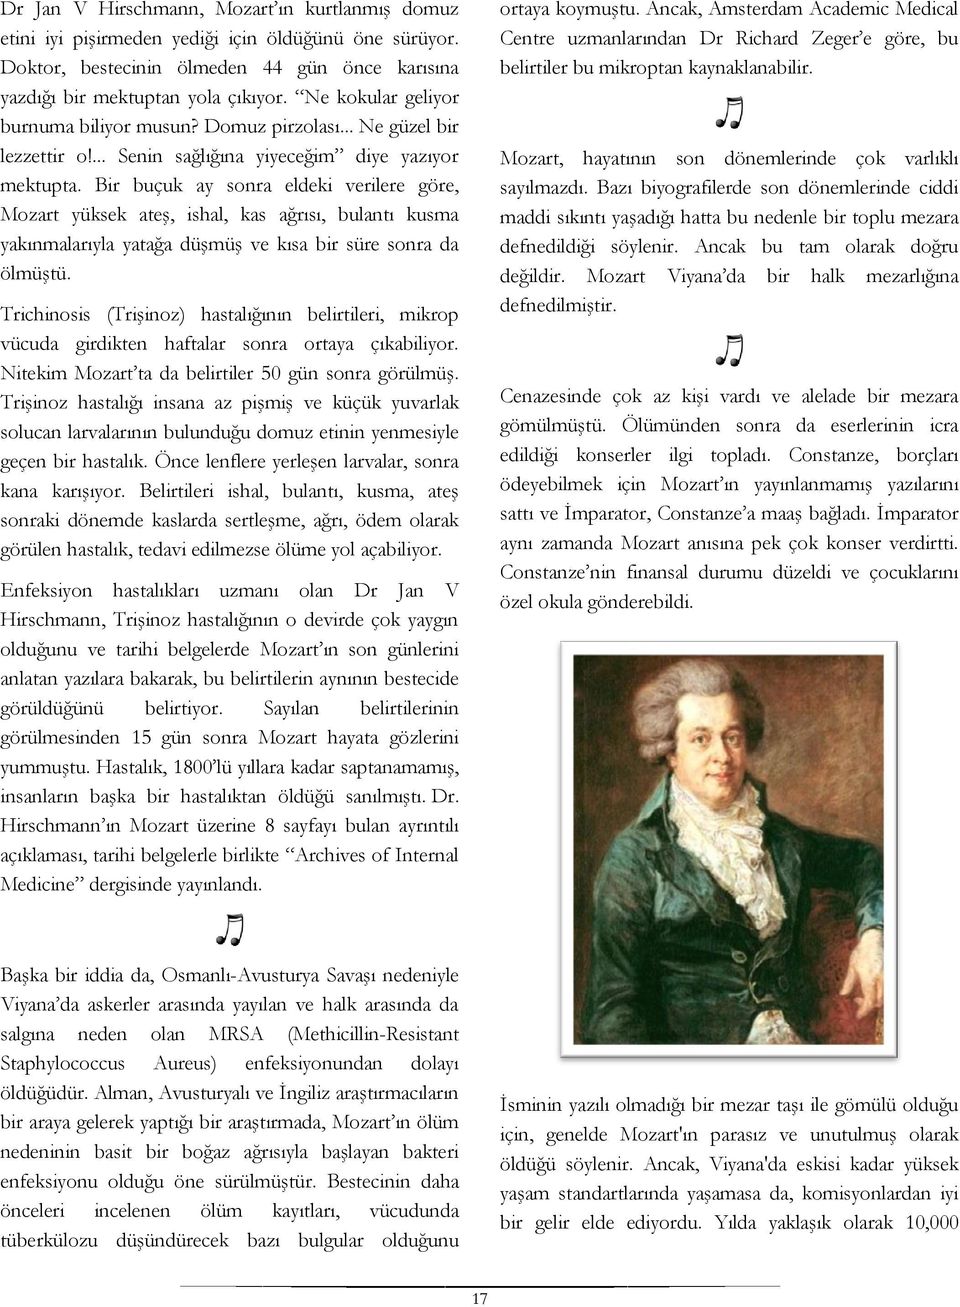 Bir buçuk ay sonra eldeki verilere göre, Mozart yüksek ateş, ishal, kas ağrısı, bulantı kusma yakınmalarıyla yatağa düşmüş ve kısa bir süre sonra da ölmüştü.